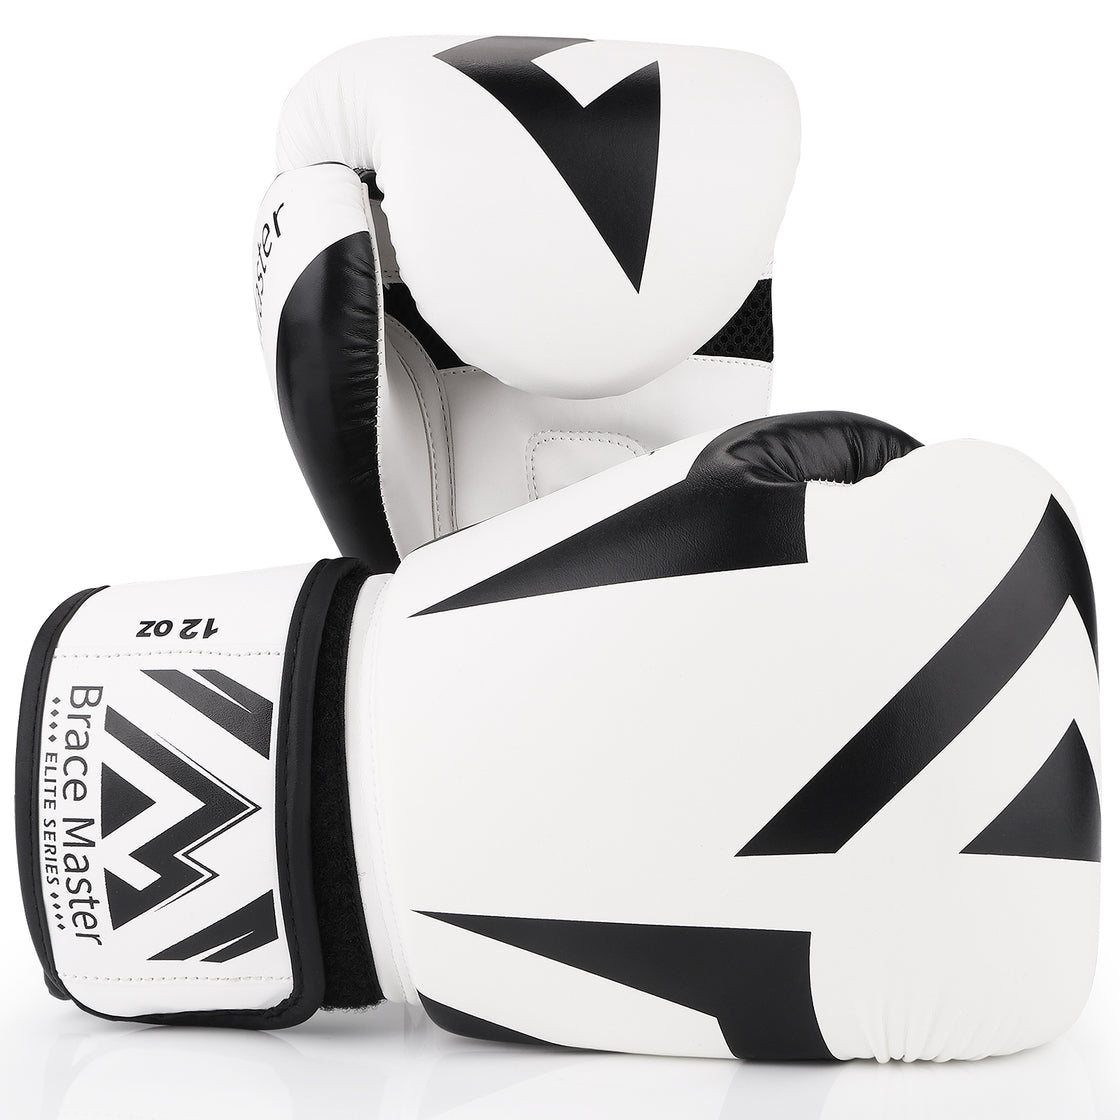 Brace Master MMA UFC Boxing Gloves for Men Women